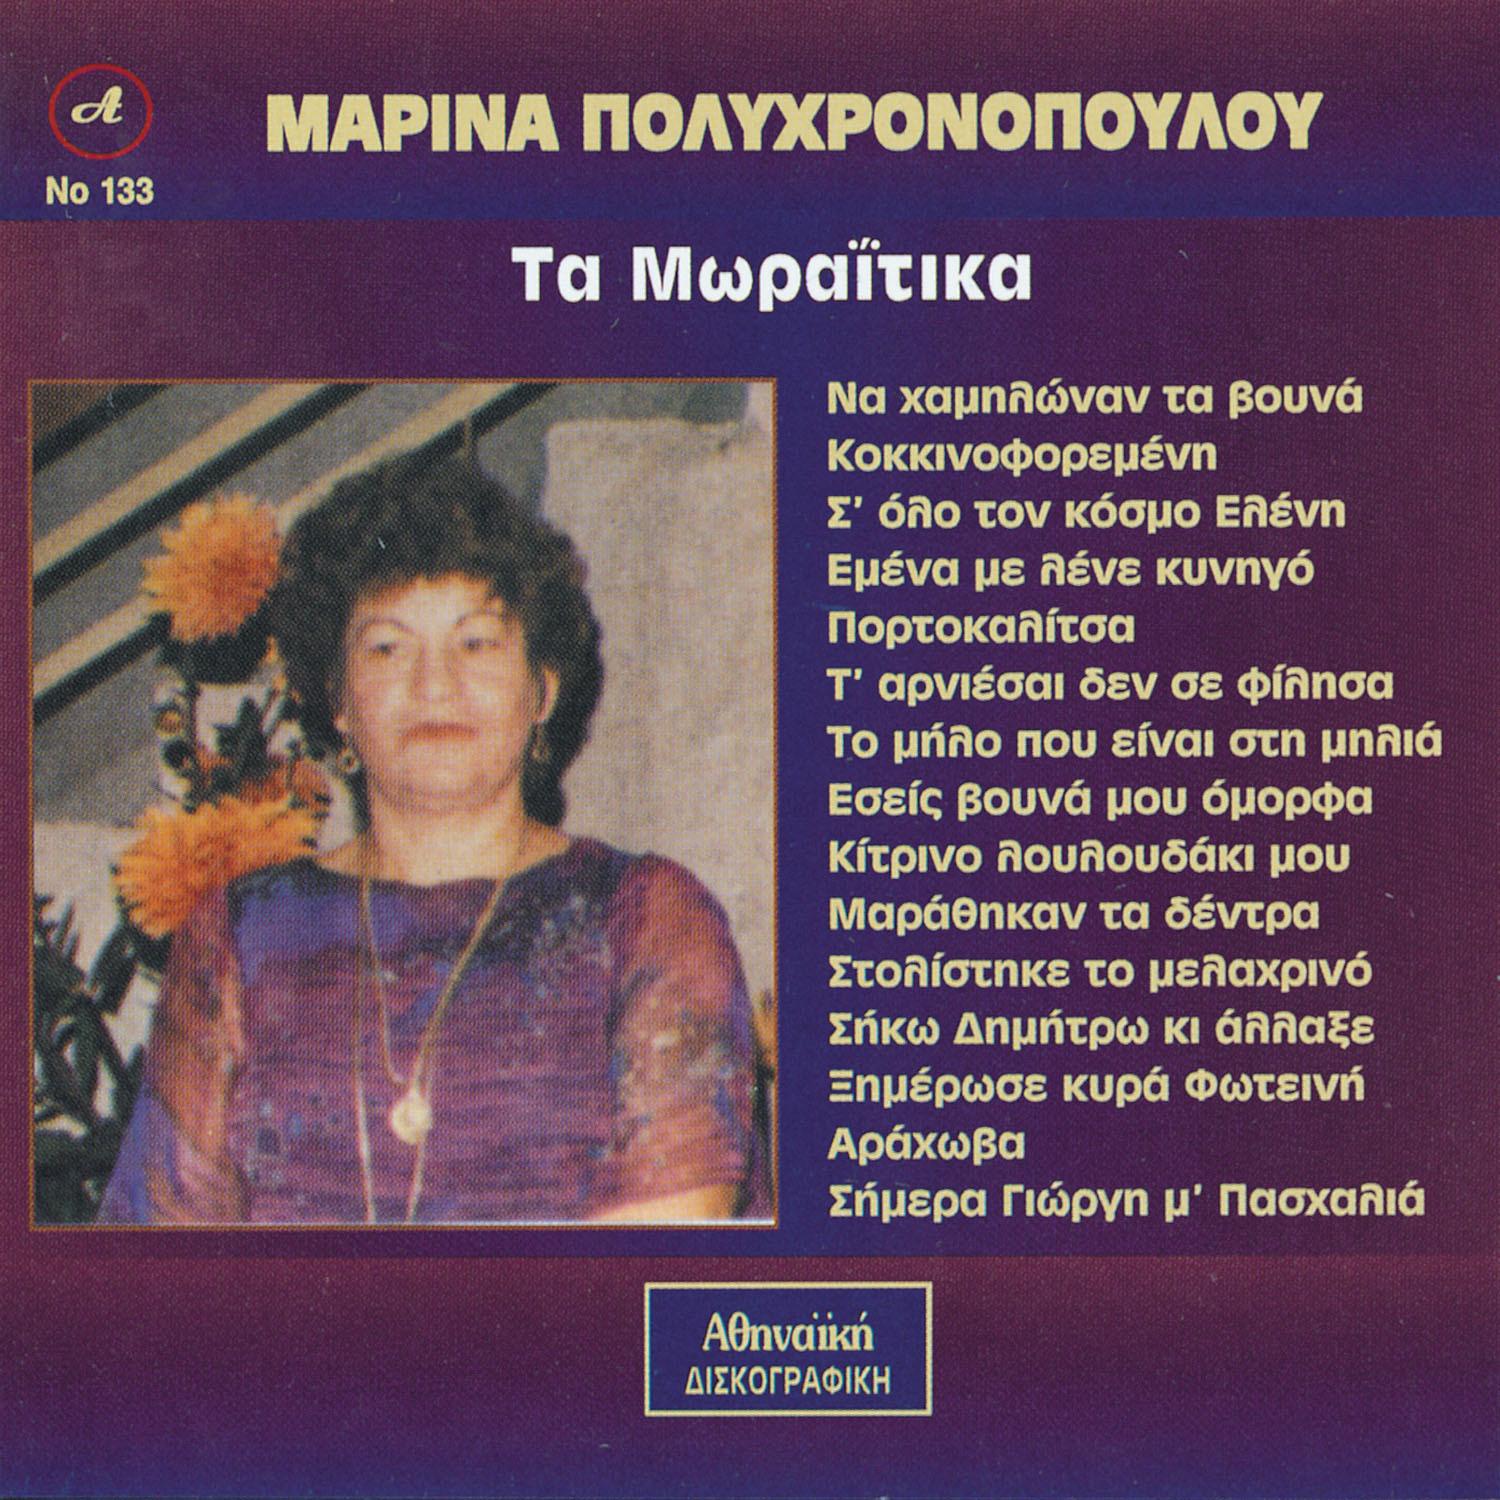 Marina Polixronopoulou - Marathikan ta dentra